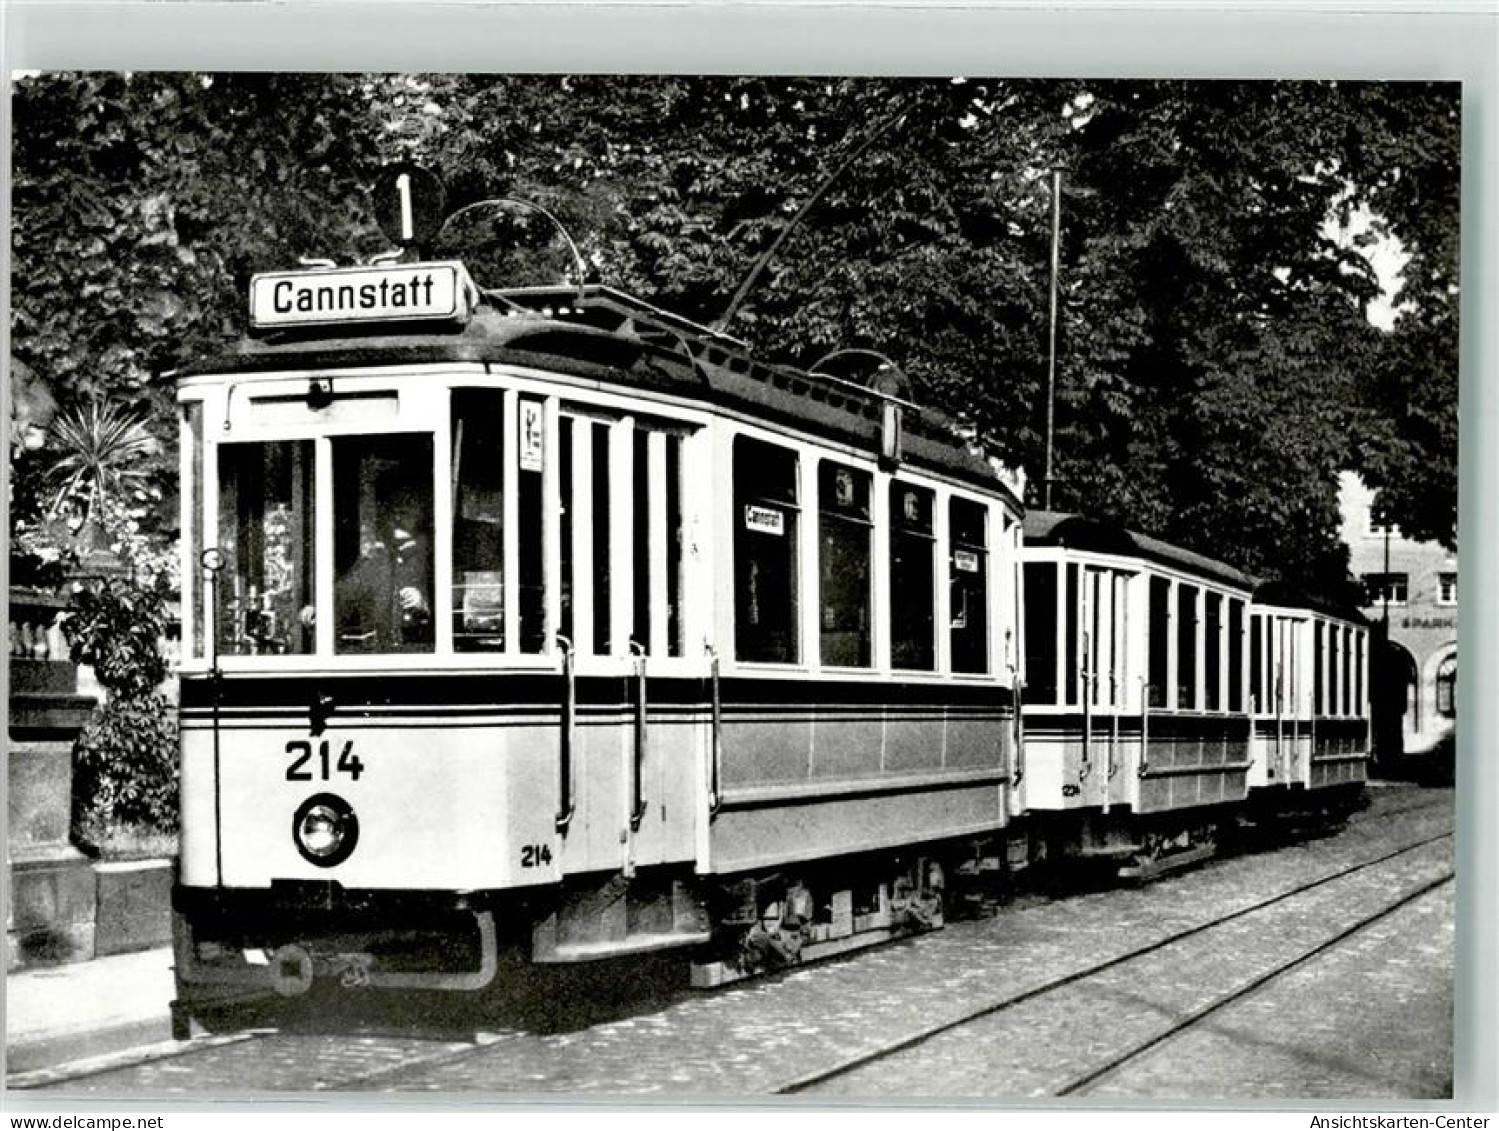 39519605 - Stuttgart - Stuttgart